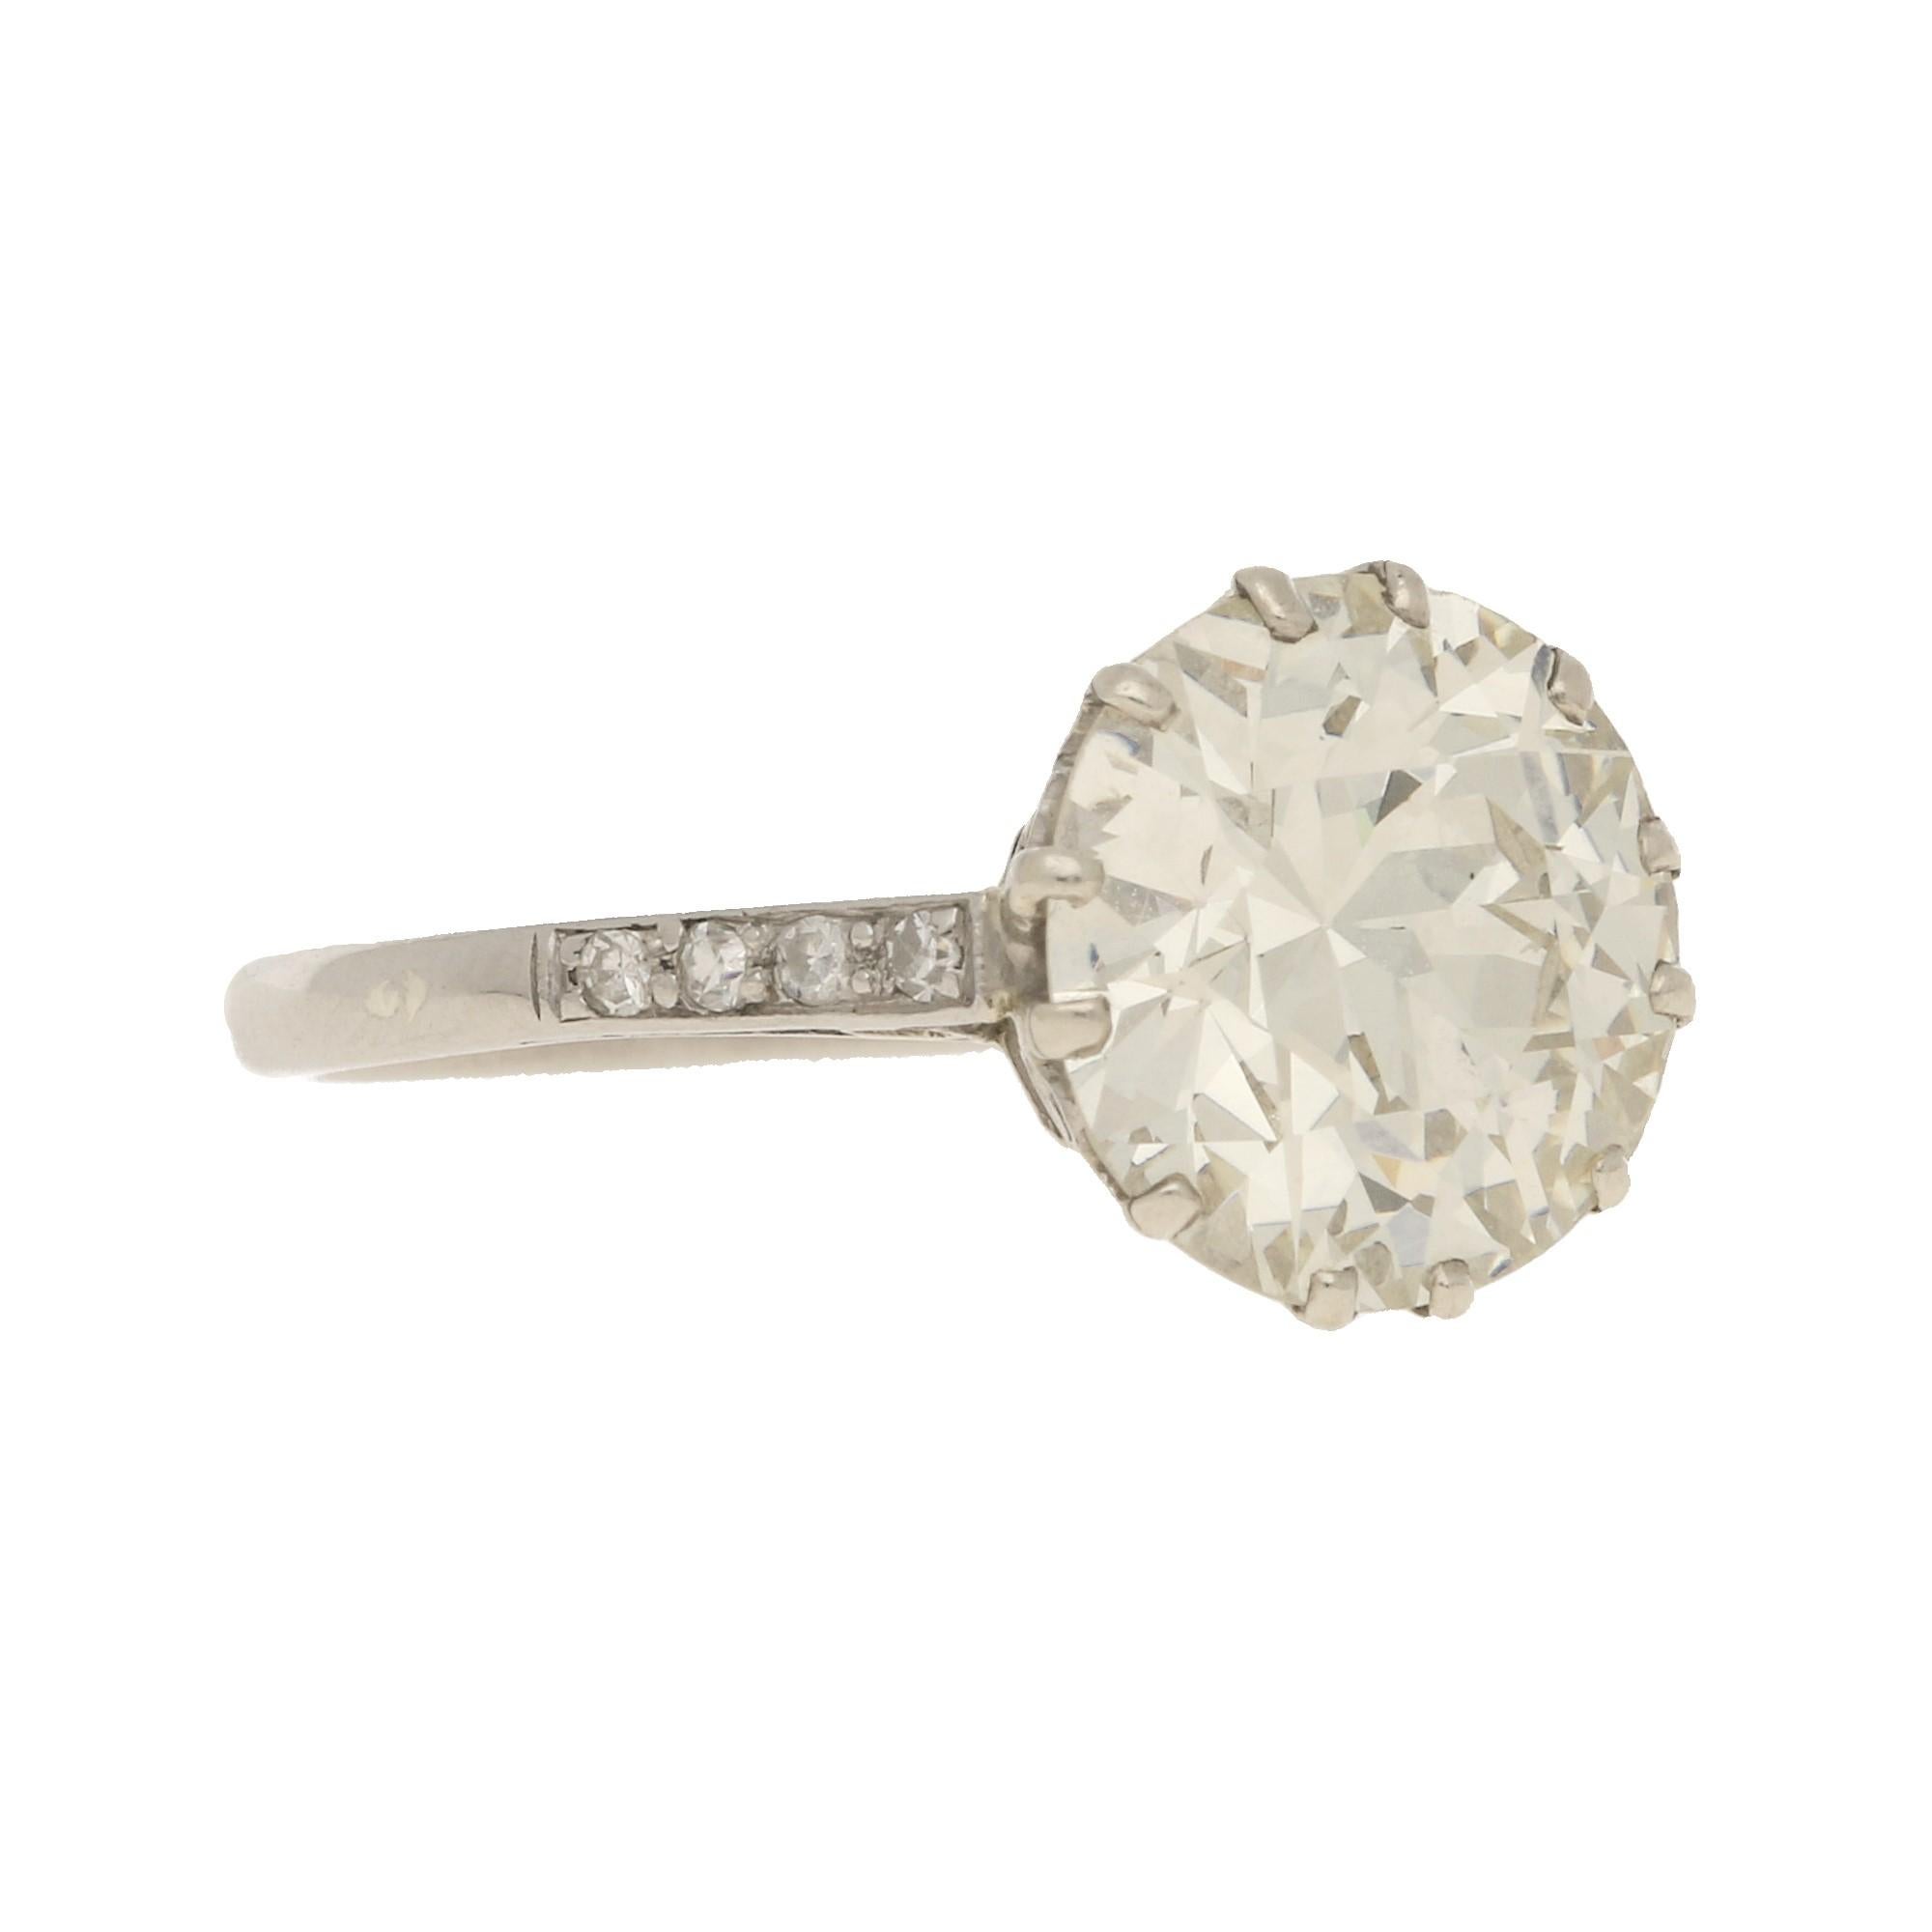 Art Deco 3.95 Carat Diamond Solitaire Engagement Ring Set in Platinum